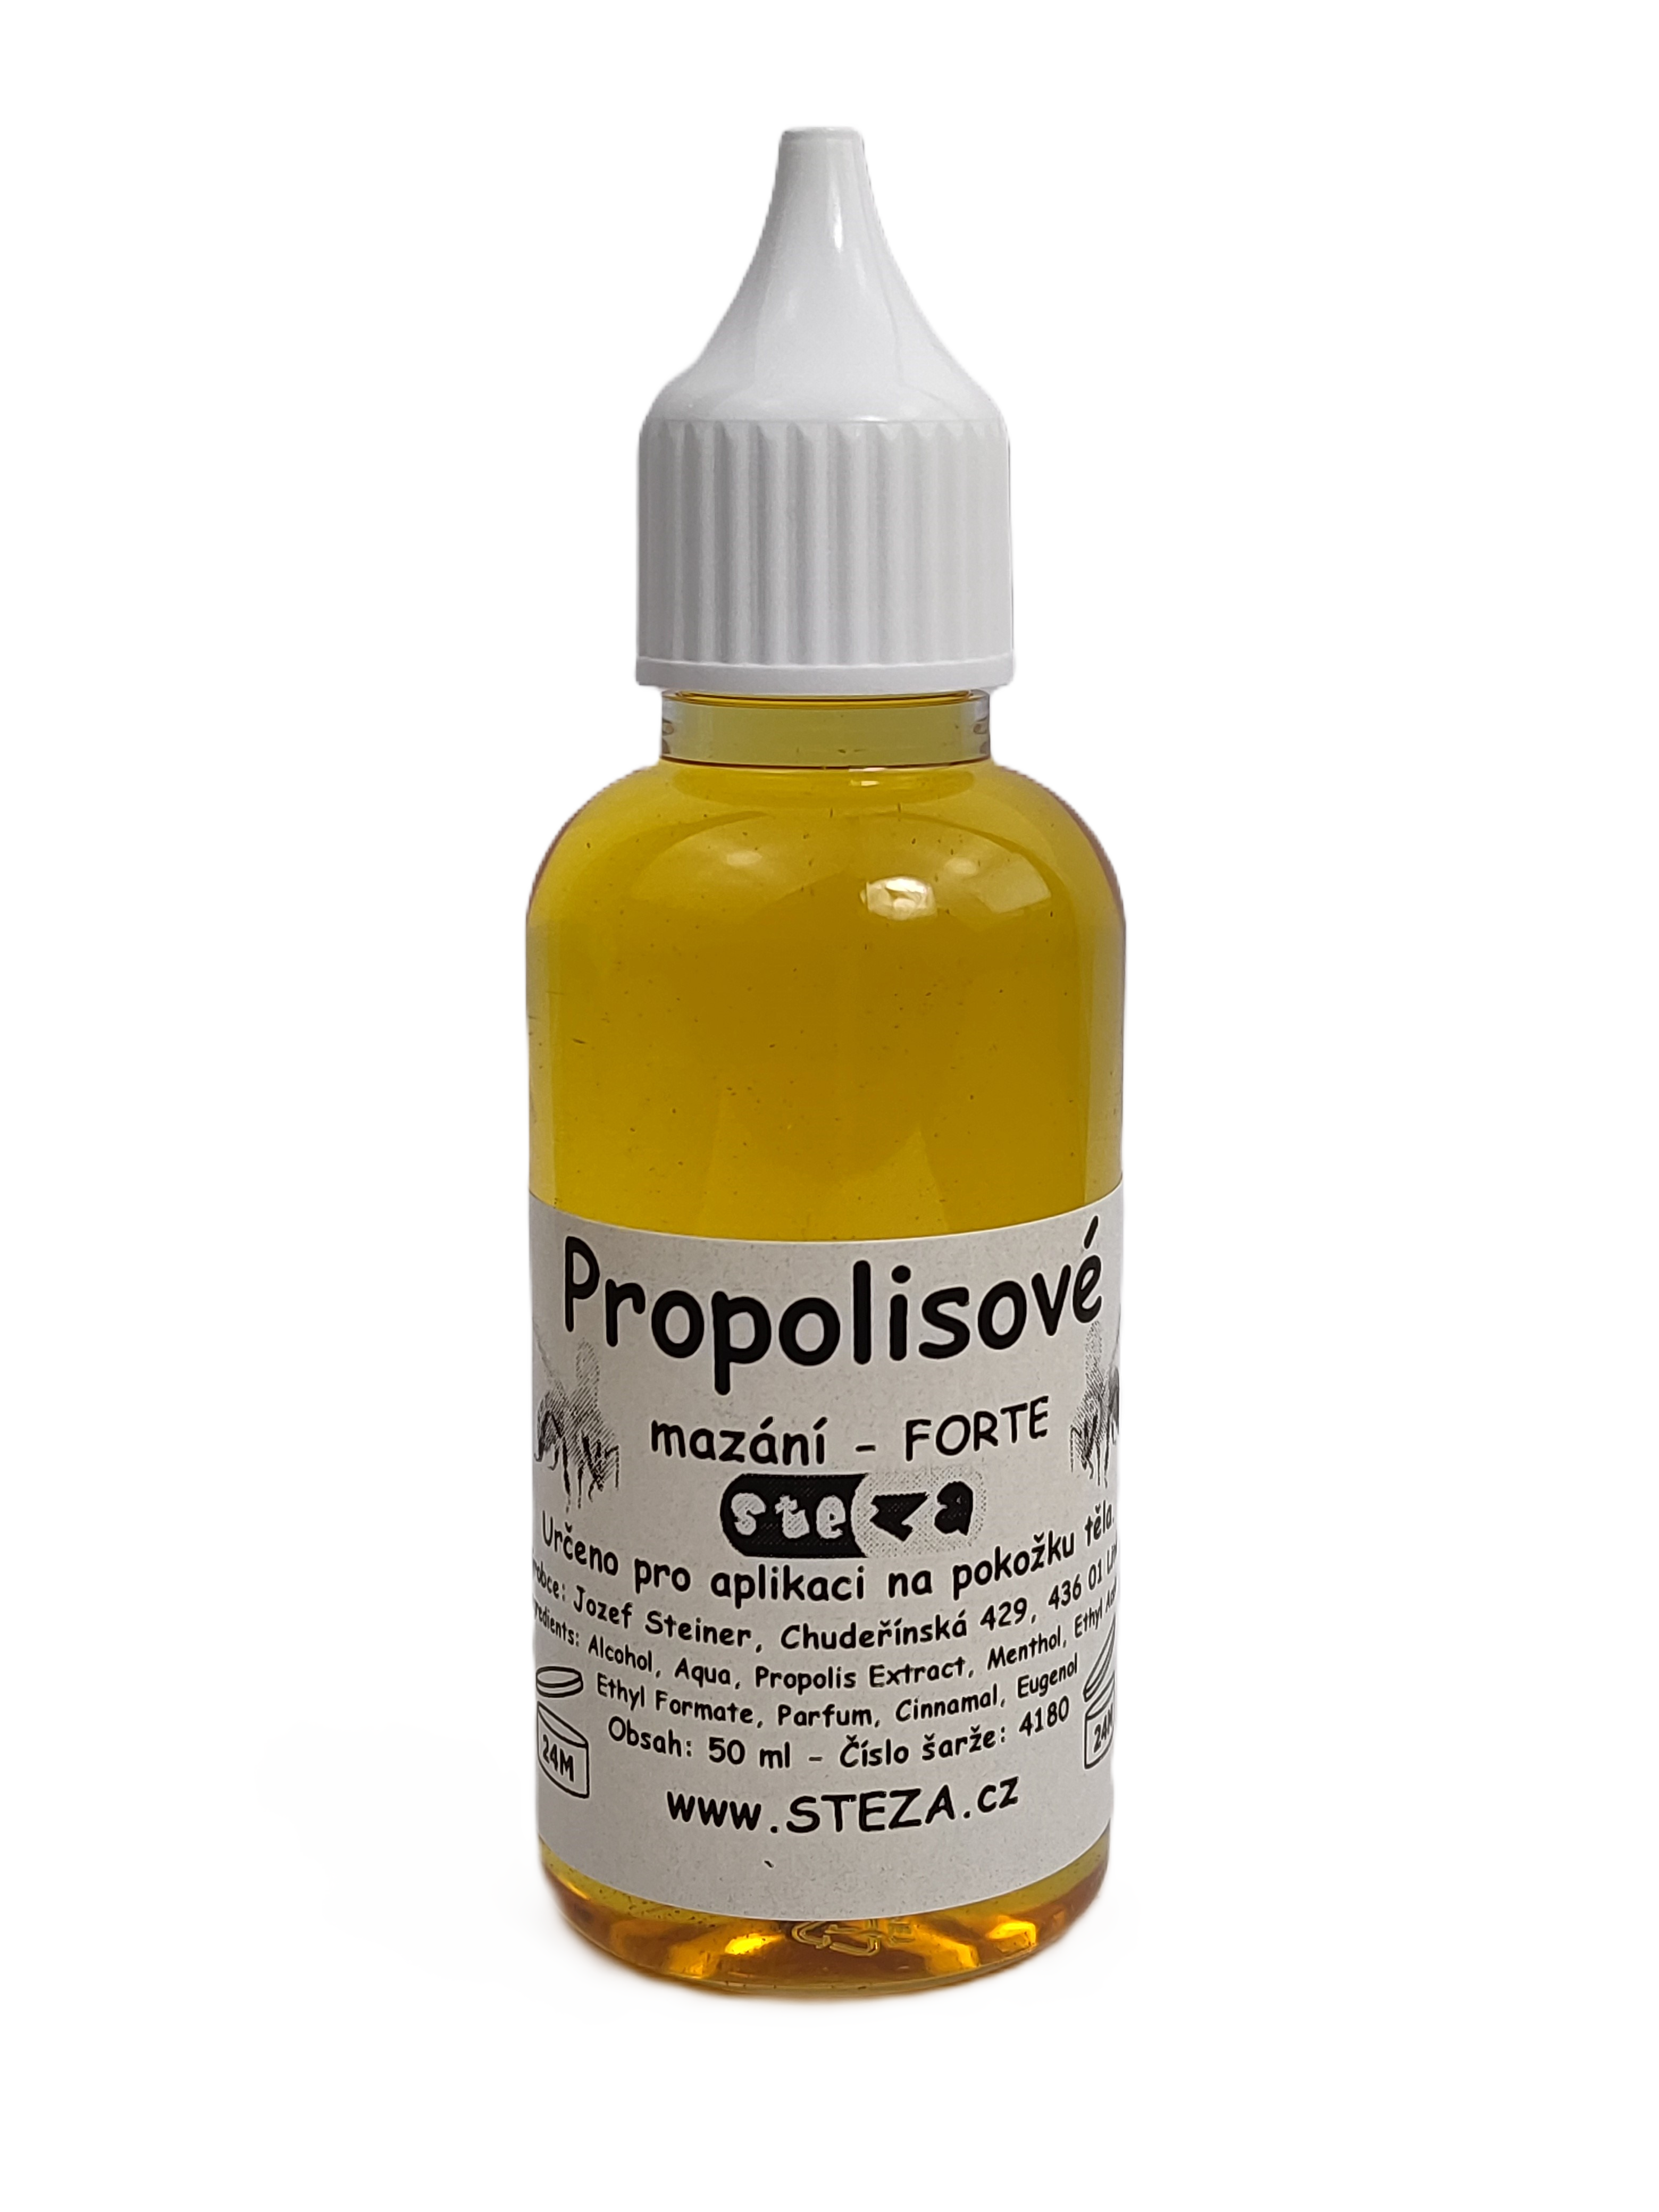 STEZA - Propolisové mazání - FORTE 3x 50 ml. (Propolisové mazání)